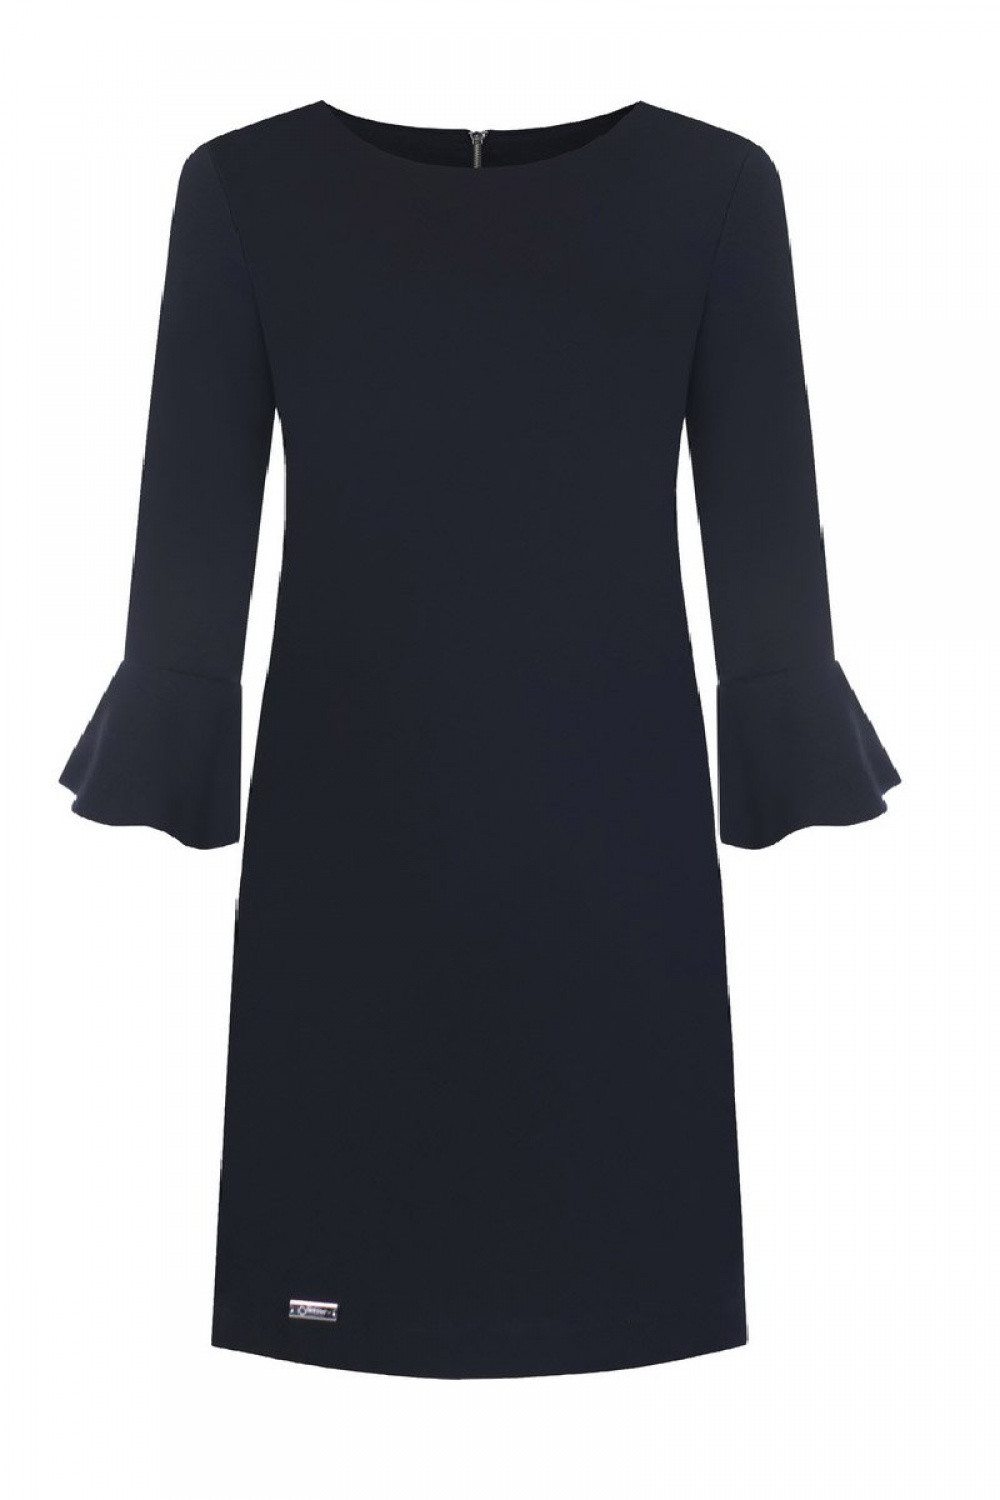 Dámské společenské šaty Erin model 108527 Černá - Jersa černá 36